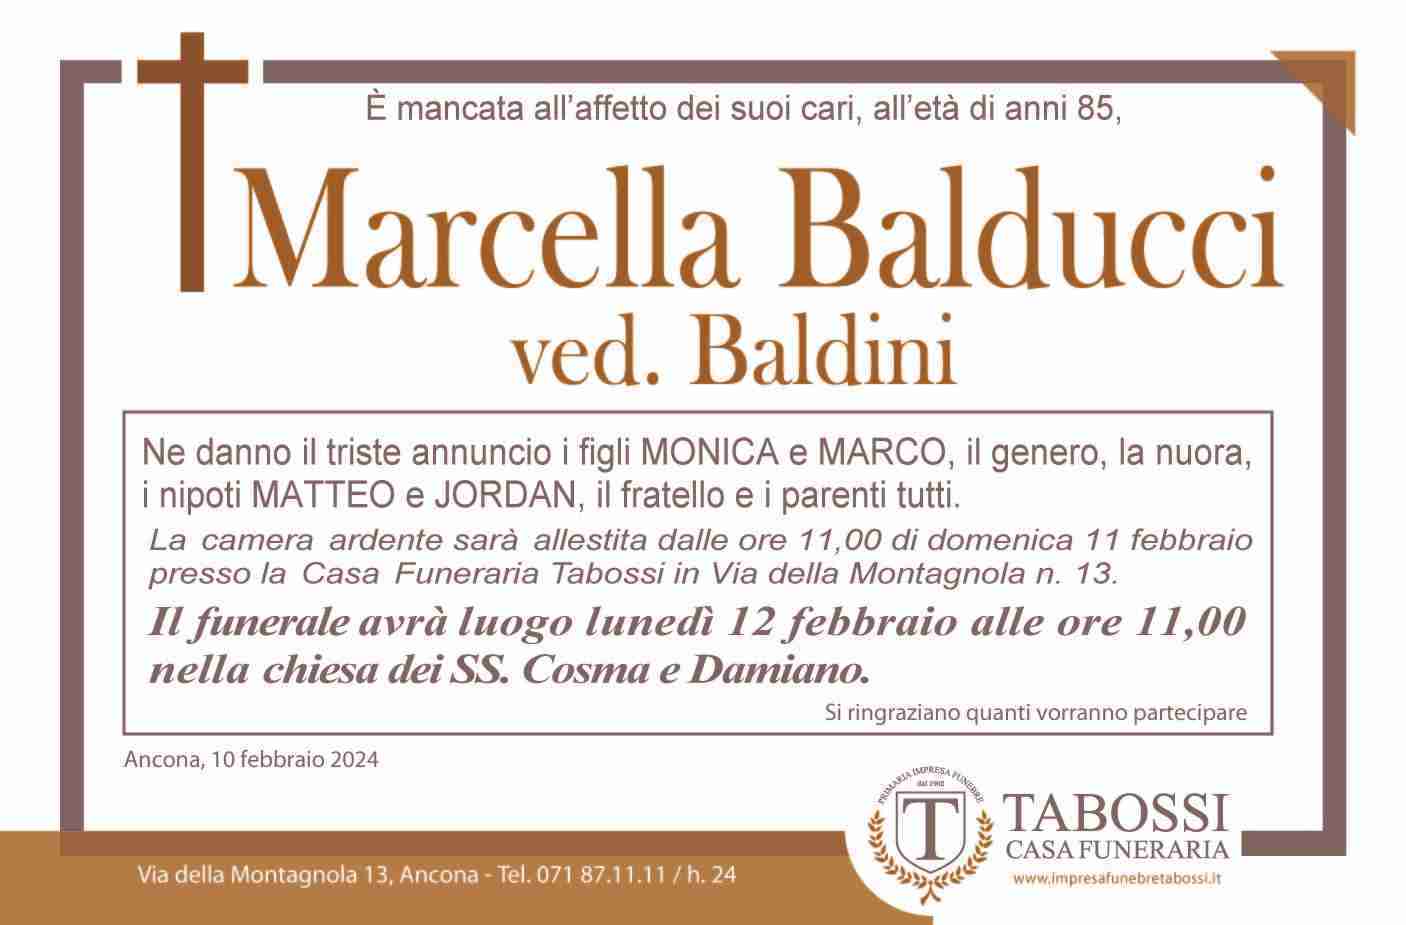 Marcella Balducci